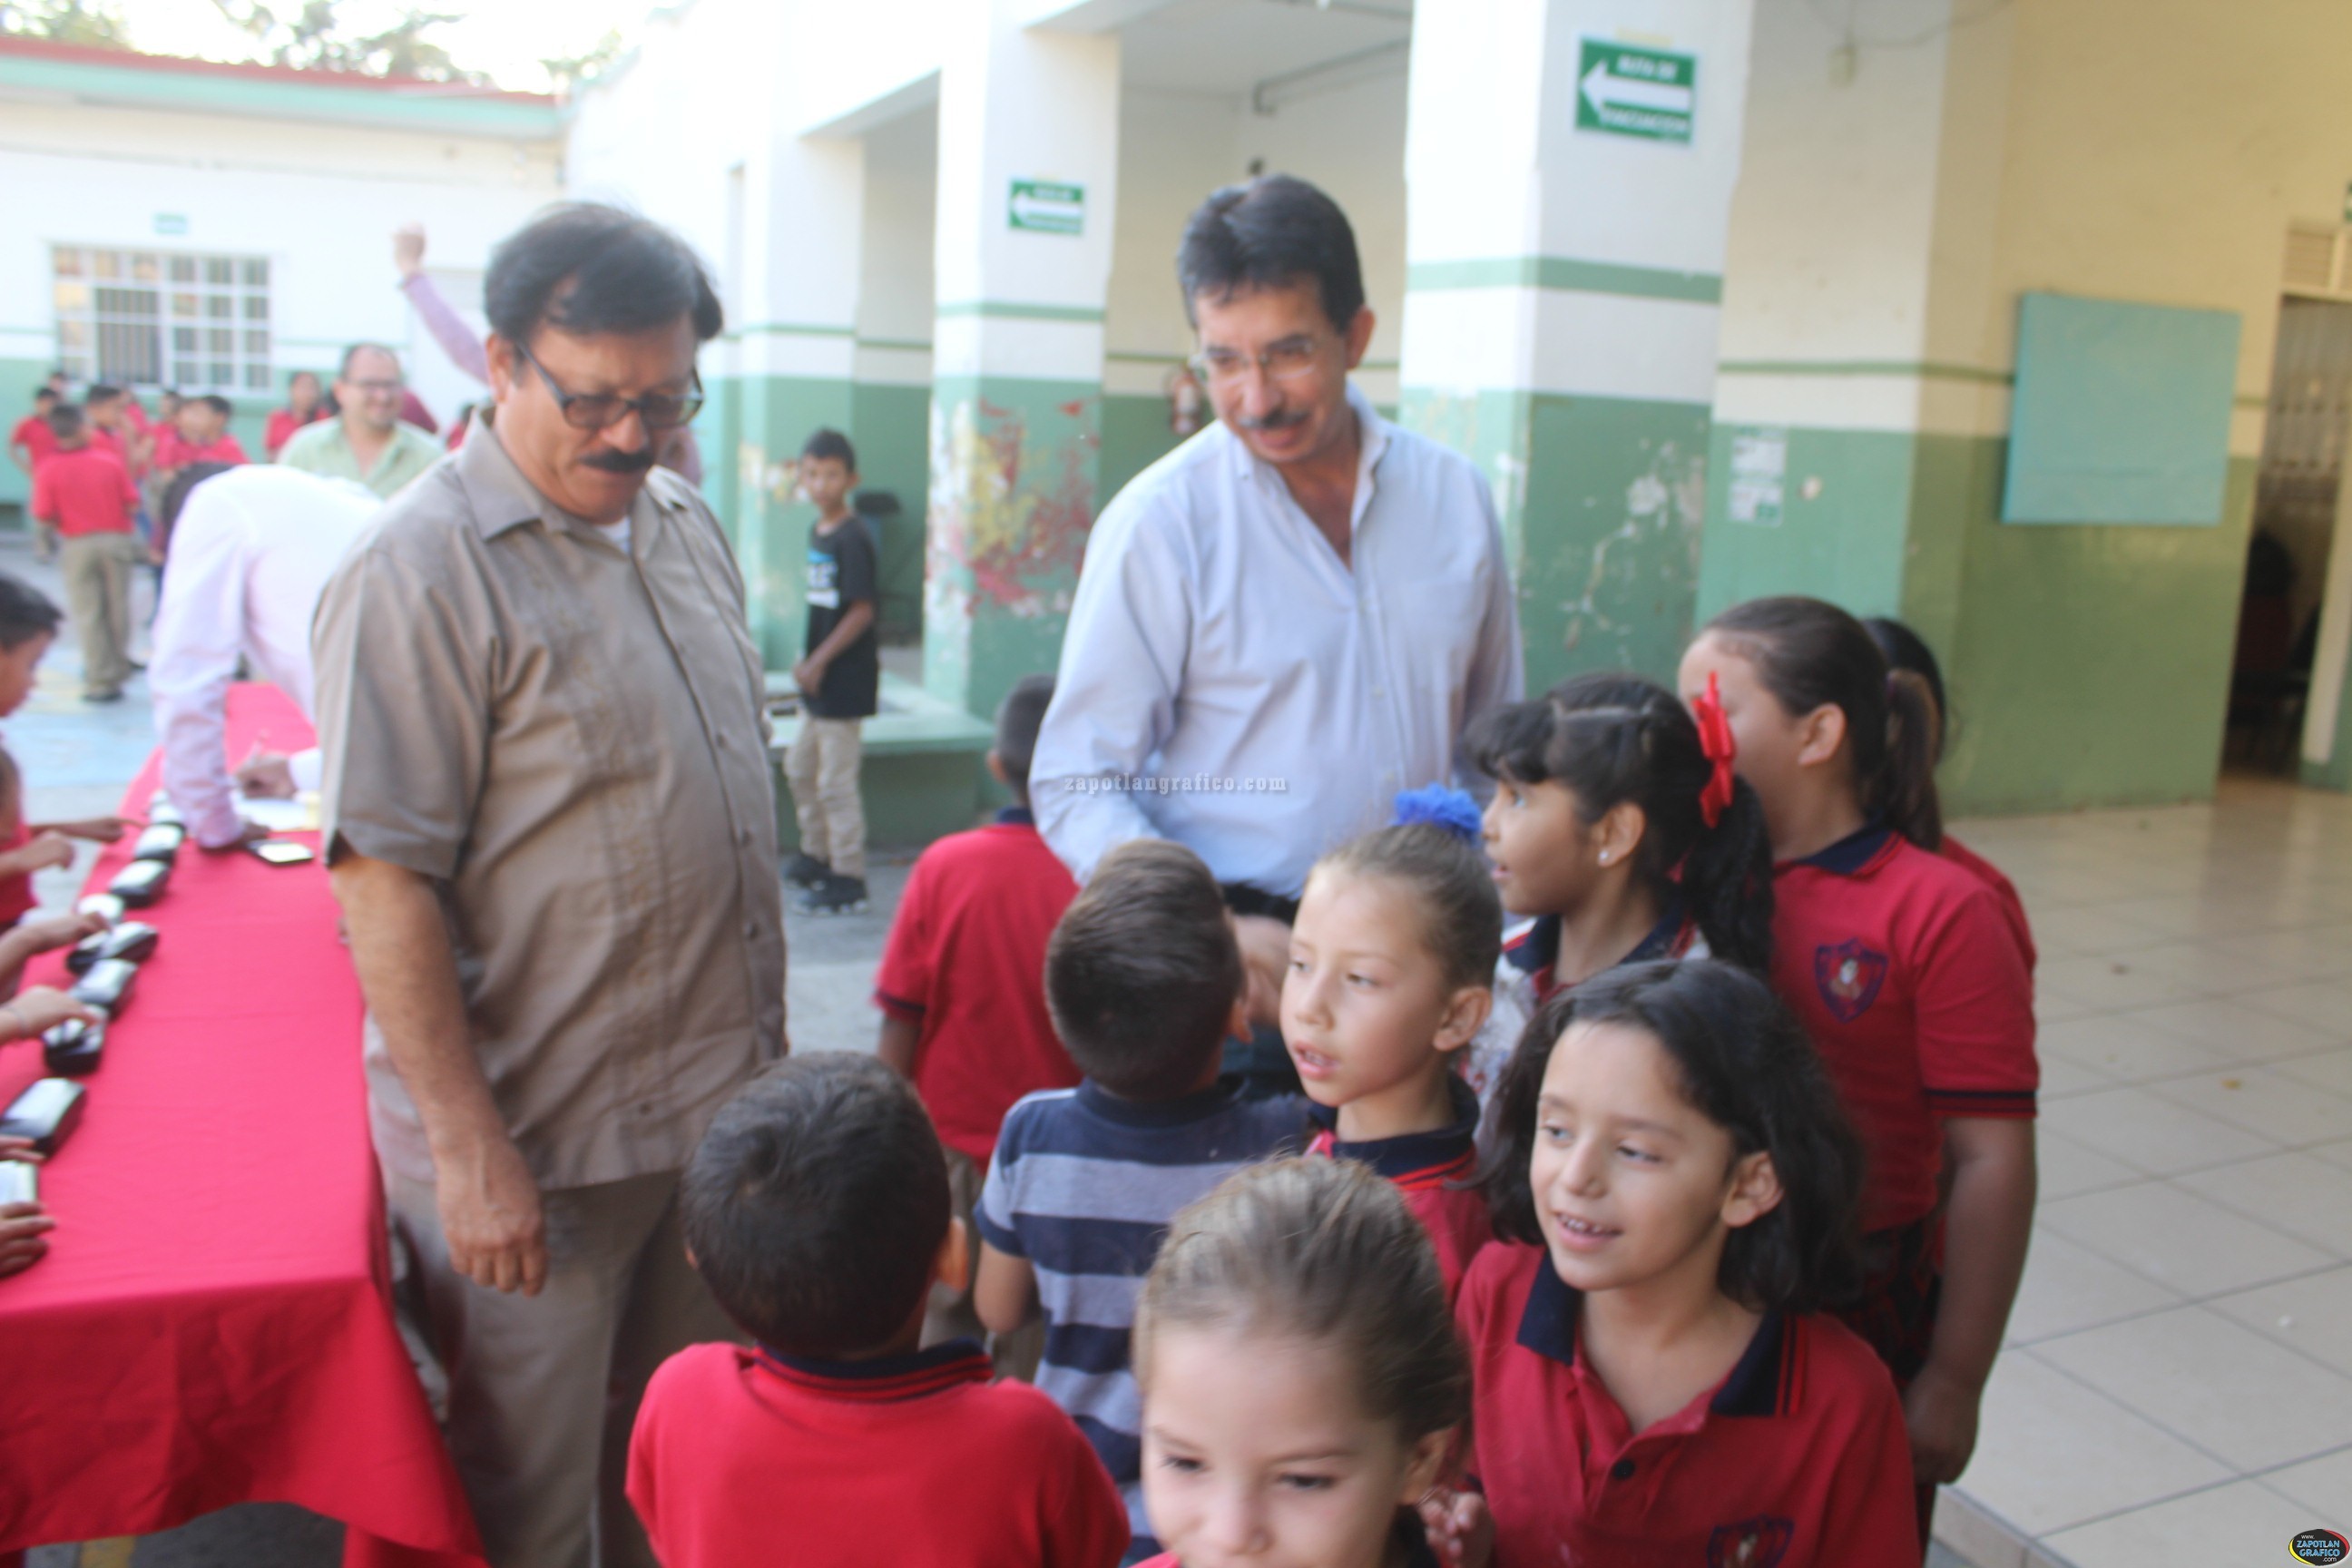 José Luis Amezcua entrega Lentes continuando con el Programa de Apoyo a la Educación de Tamazula